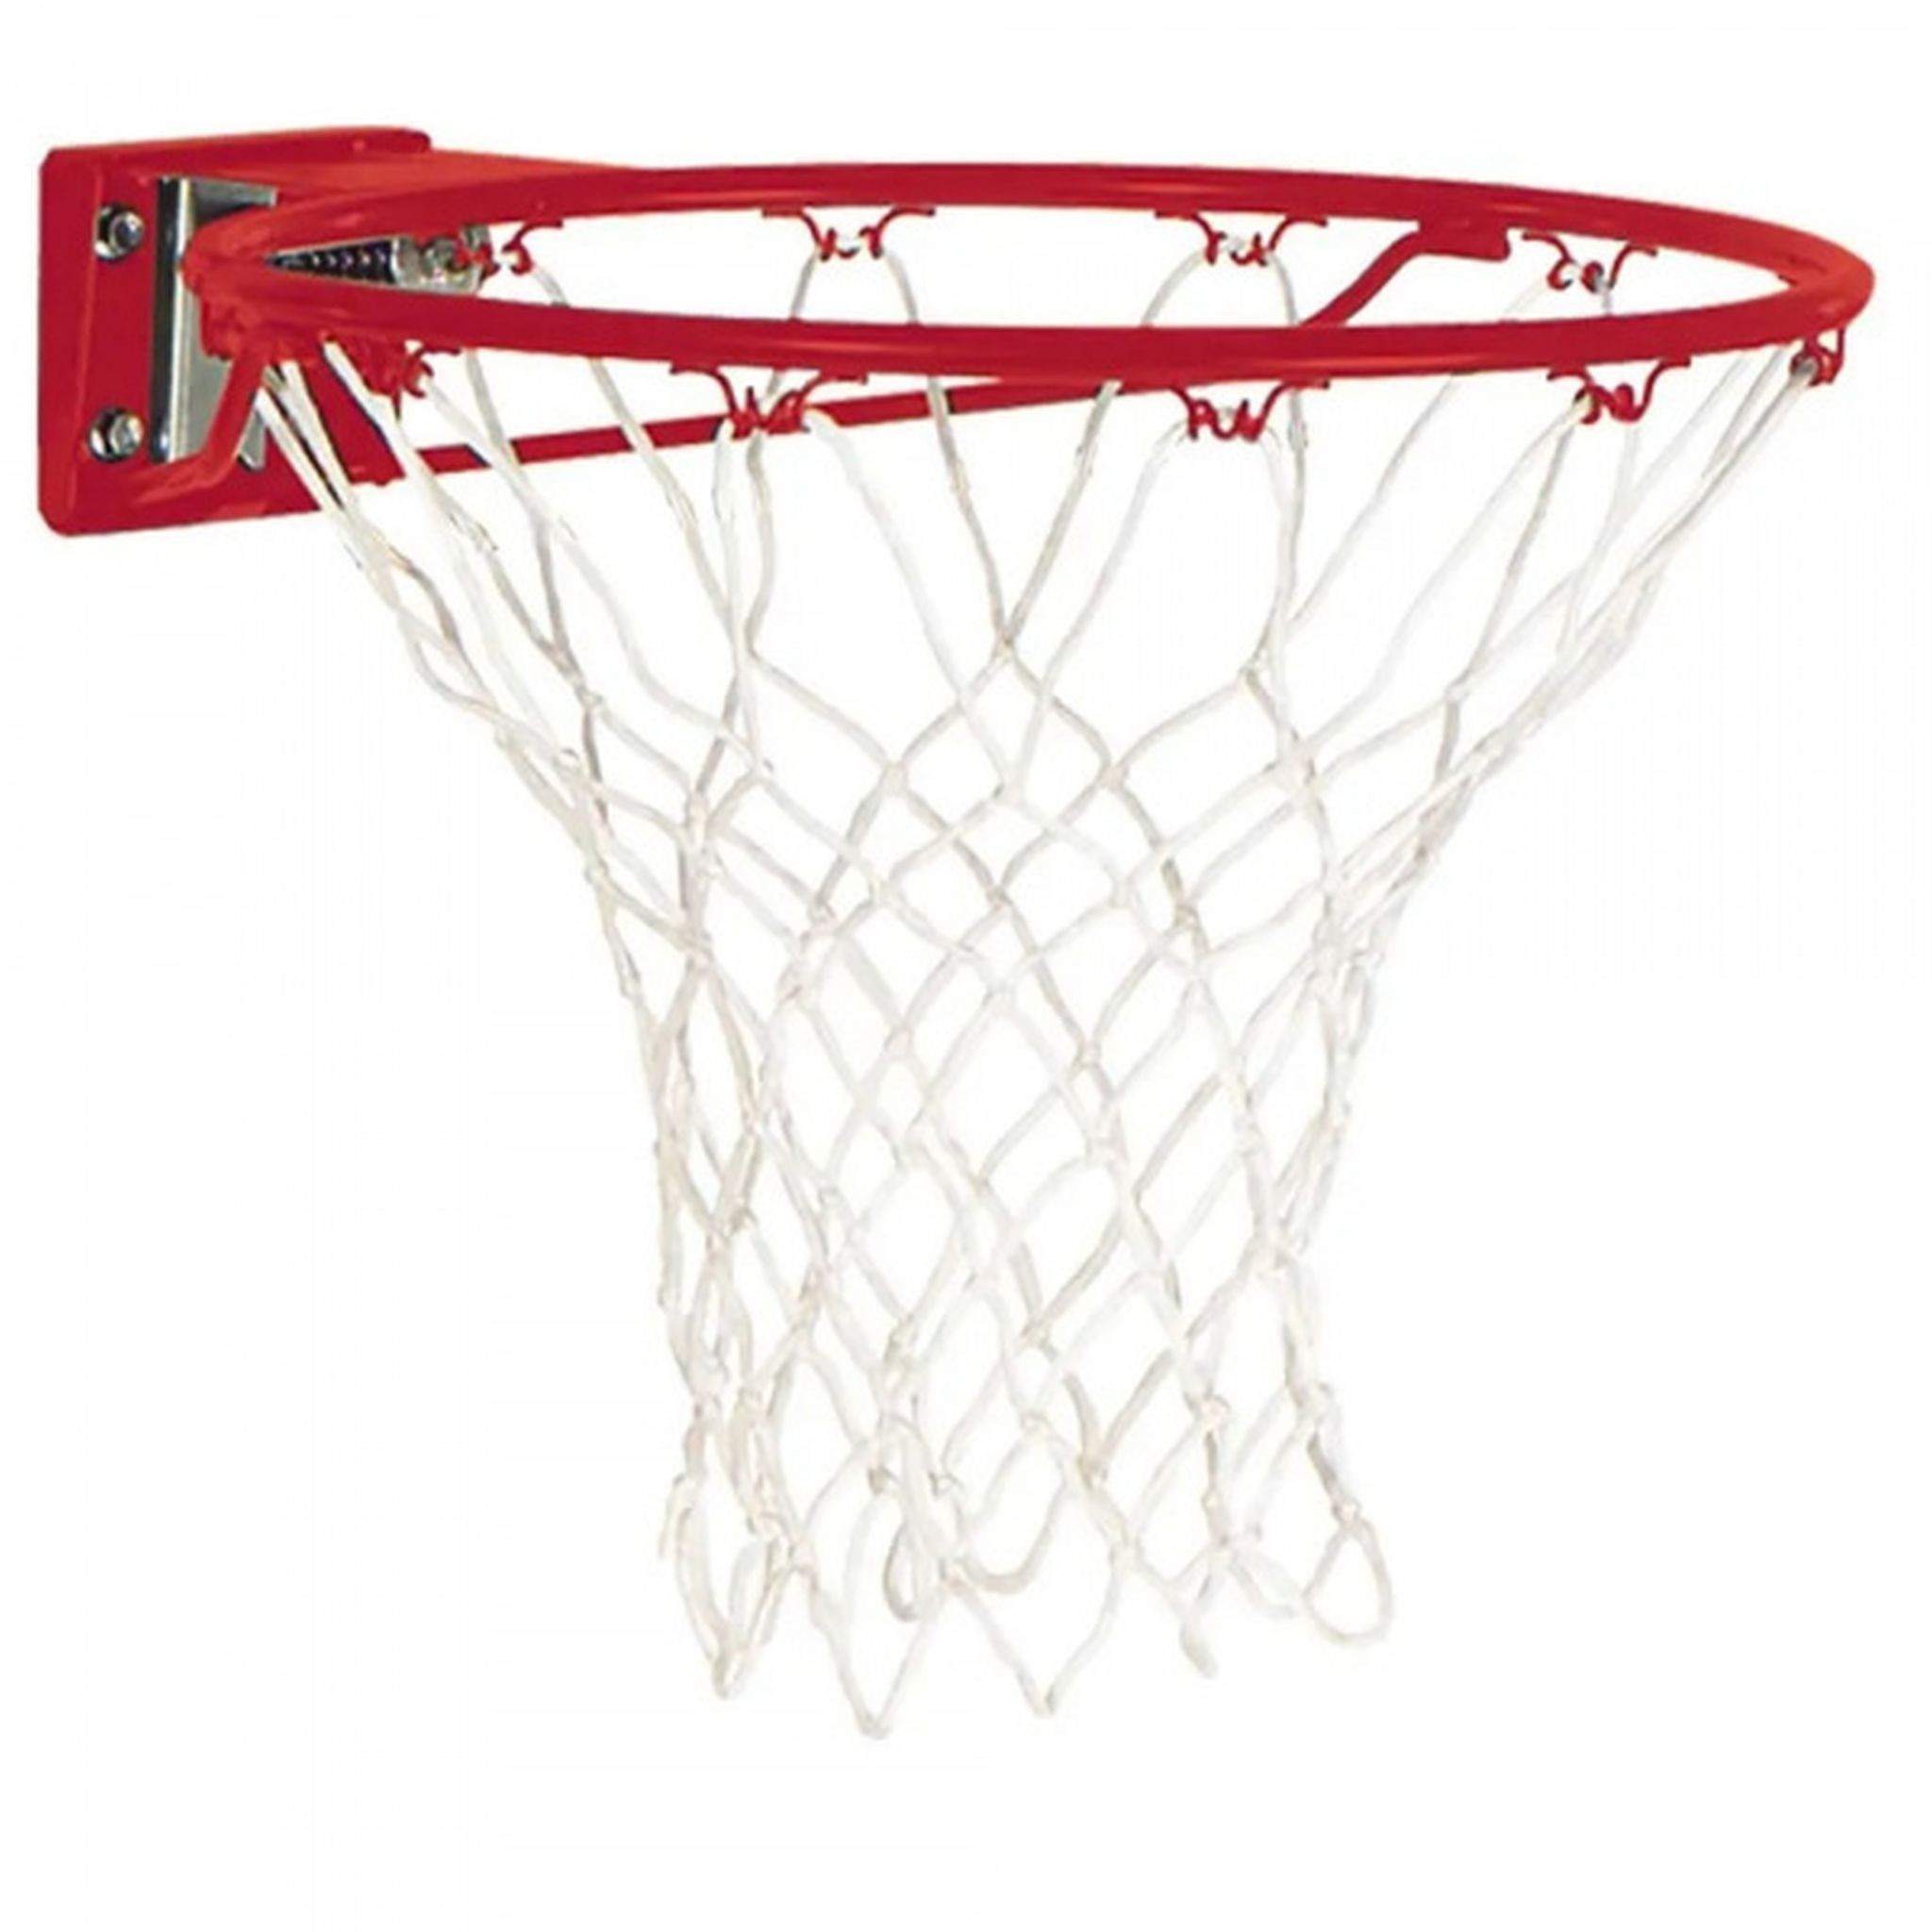 Spalding Slam Jam Basketball Ring